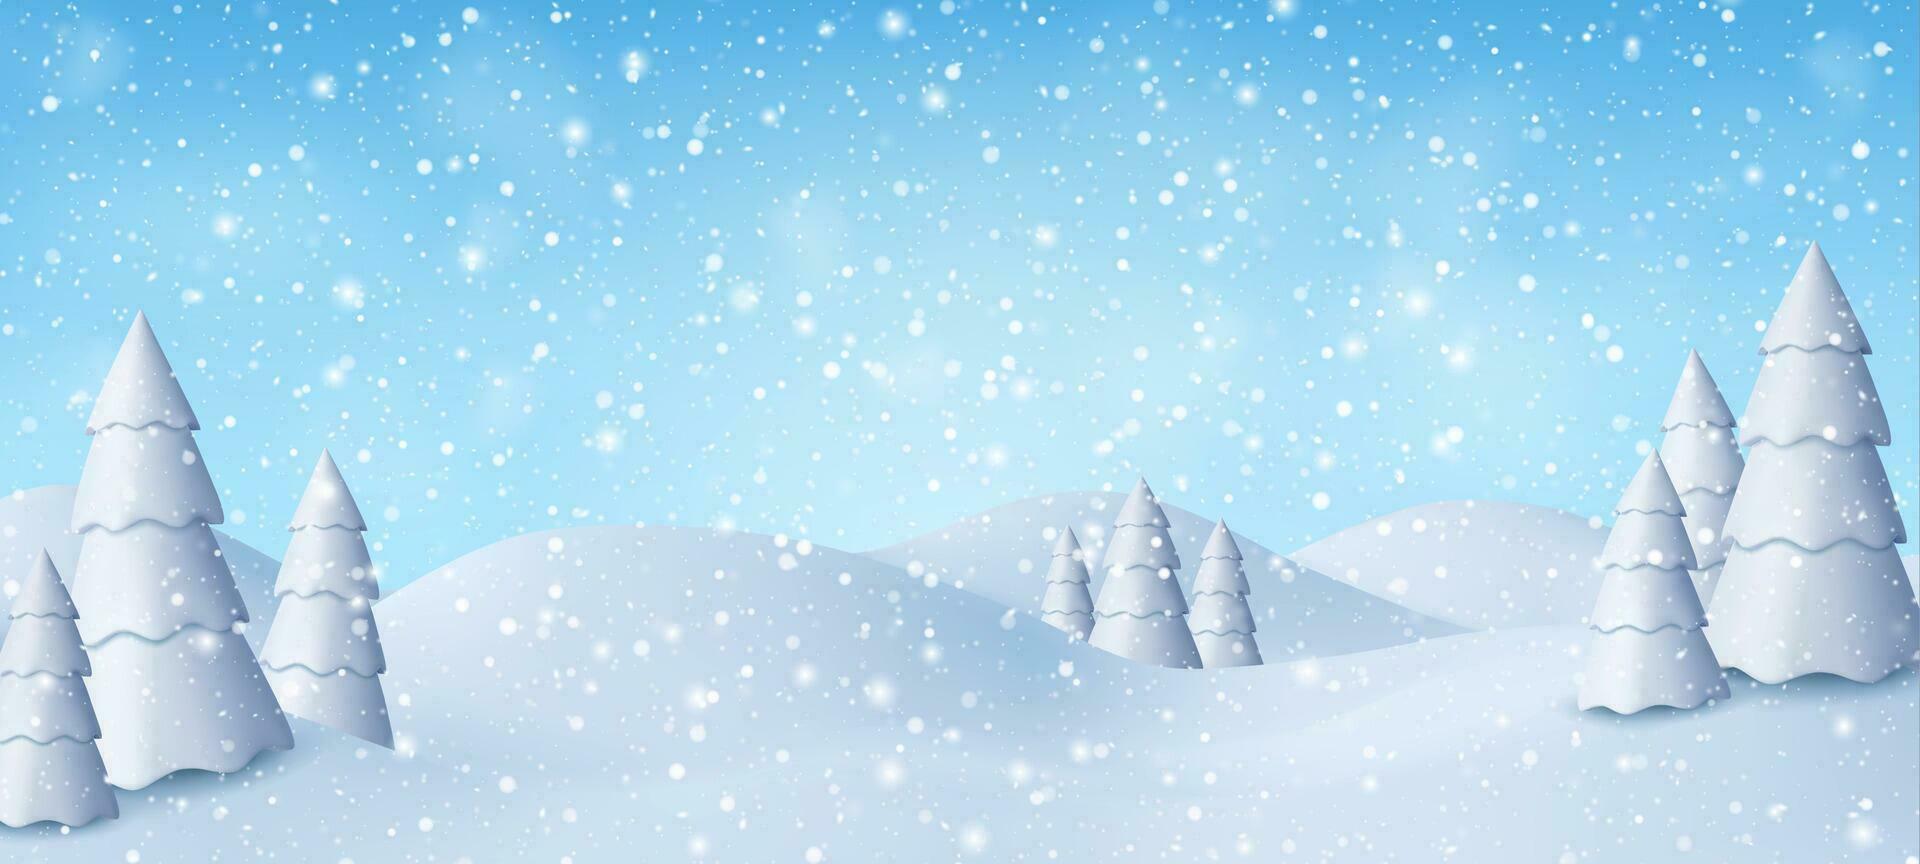 3d natural invierno Navidad y nuevo año antecedentes con azul cielo, nevada, copos de nieve, ventisqueros y Nevado abeto árboles.. invierno paisaje con que cae Navidad brillante nieve. vector ilustración